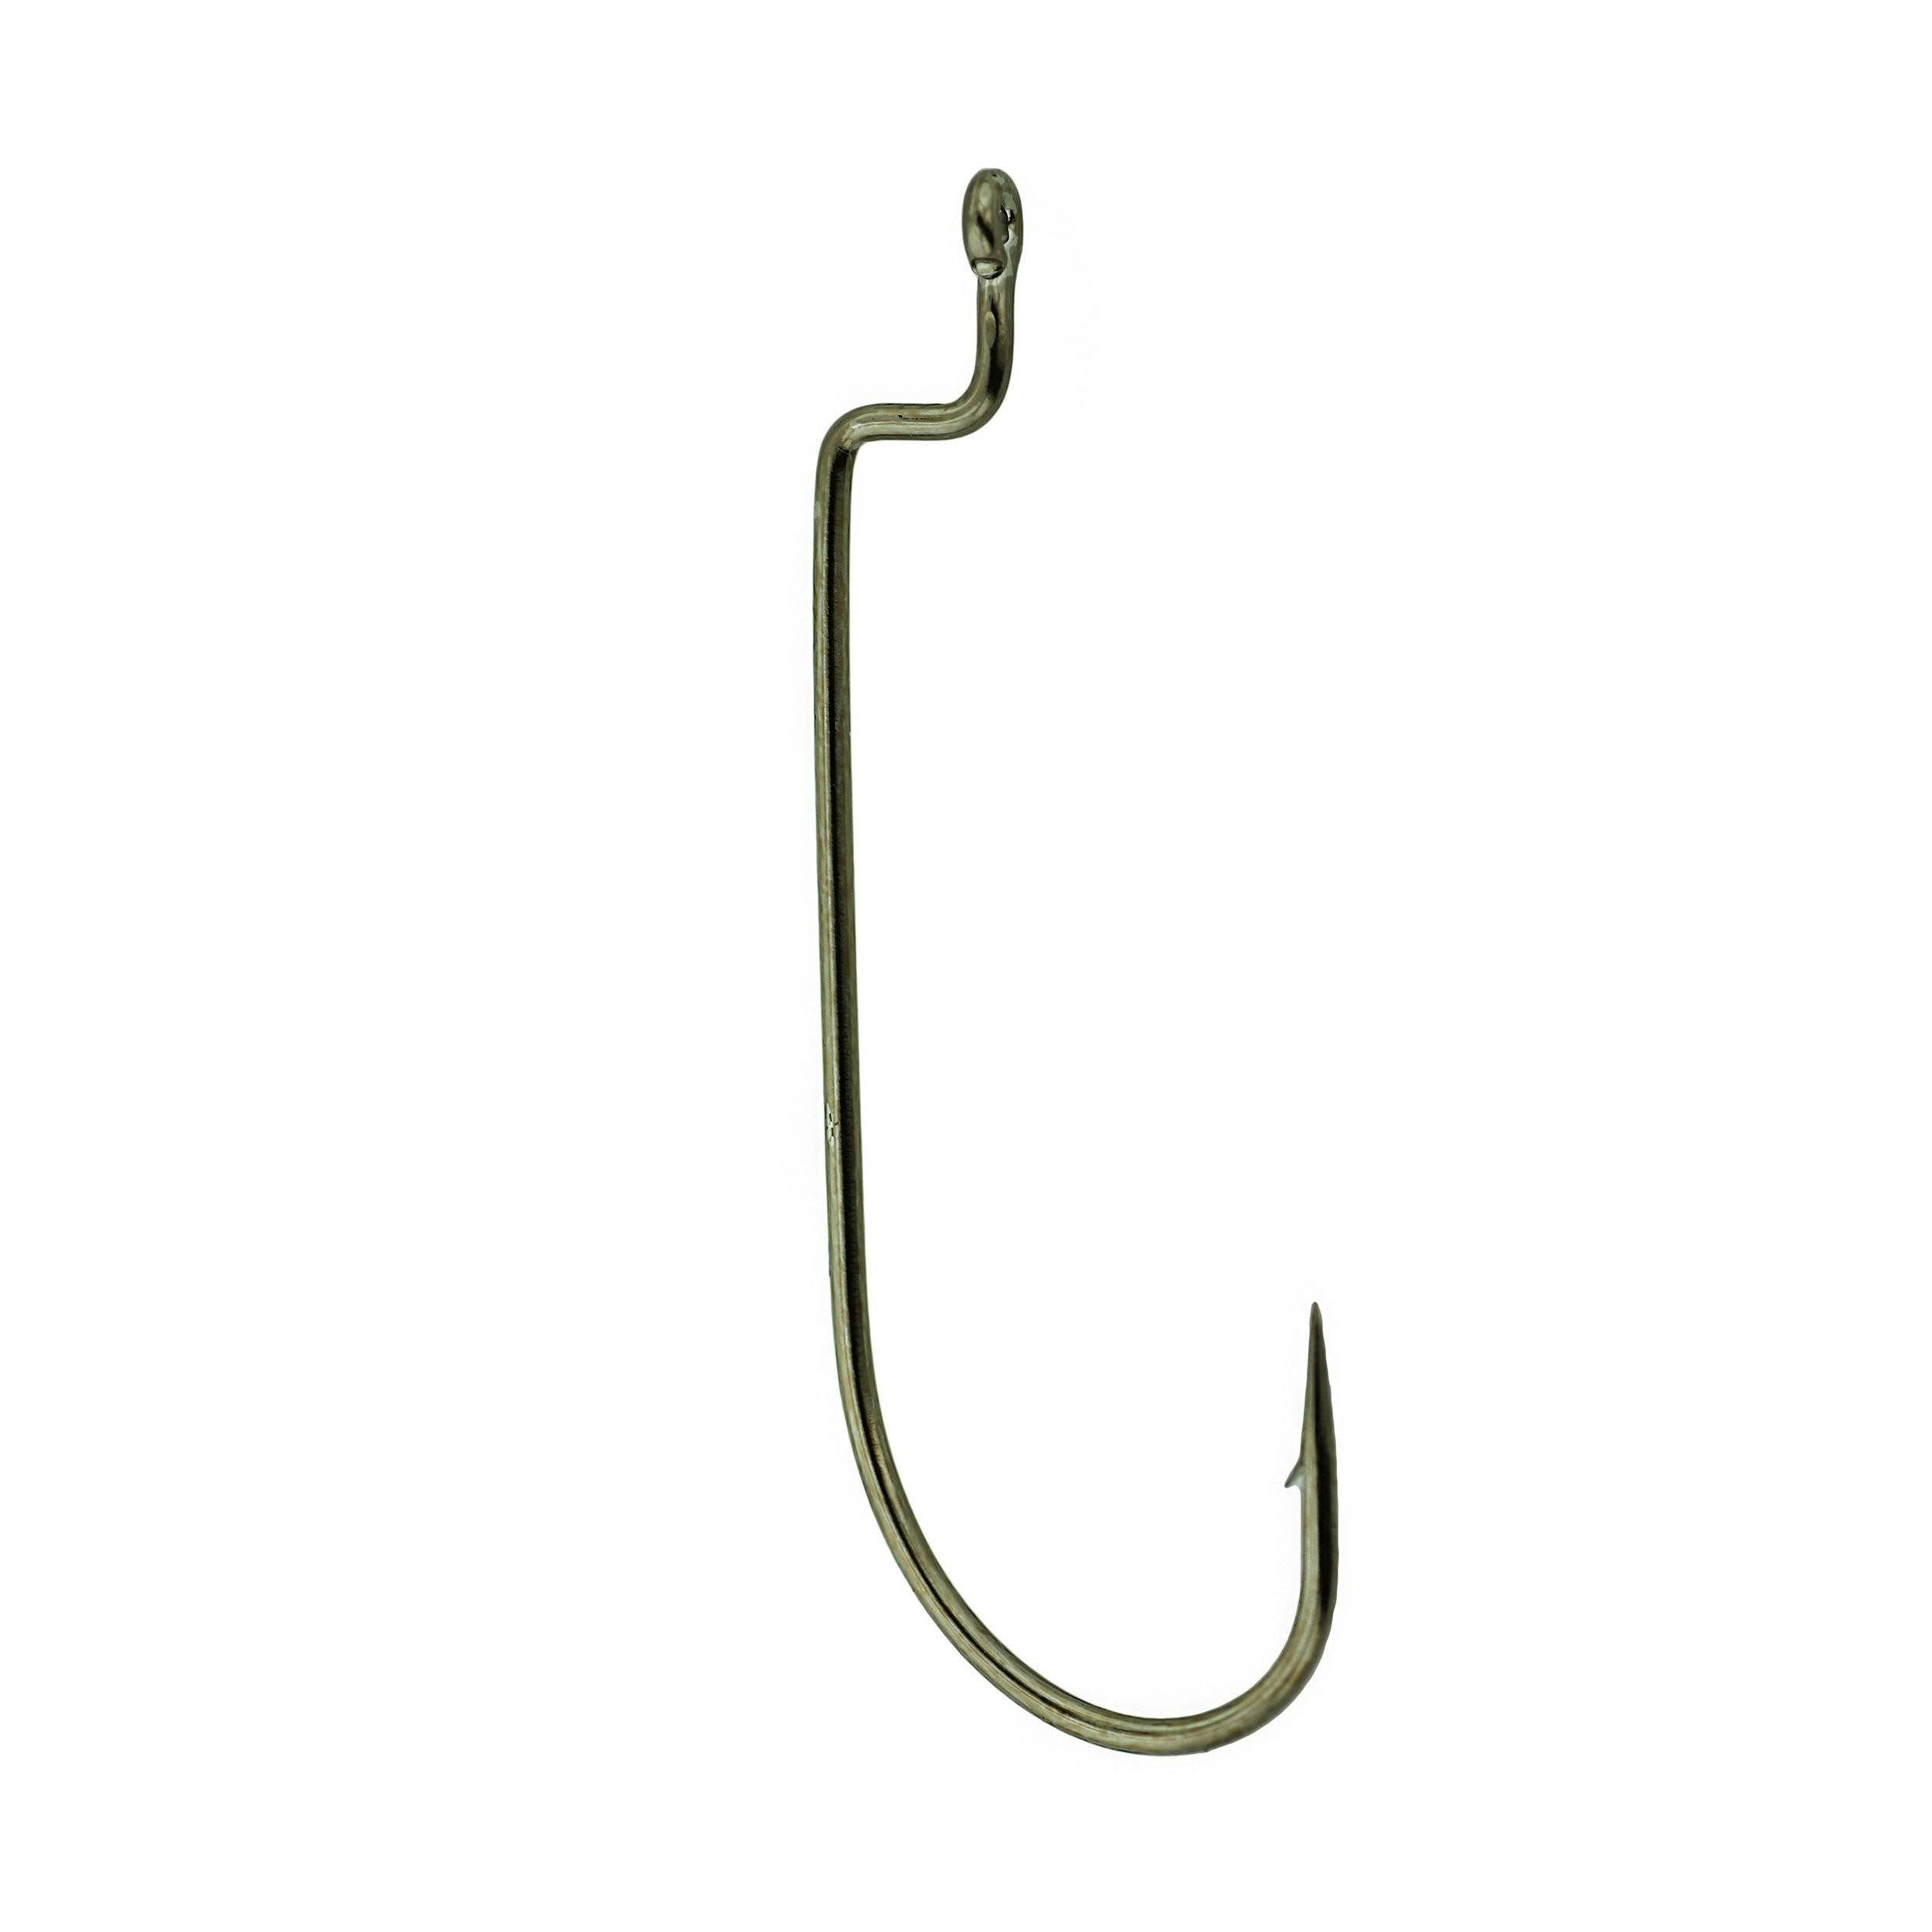 Gamakatsu Worm Offset Shank Fishing Hook - Bronze, Size 3